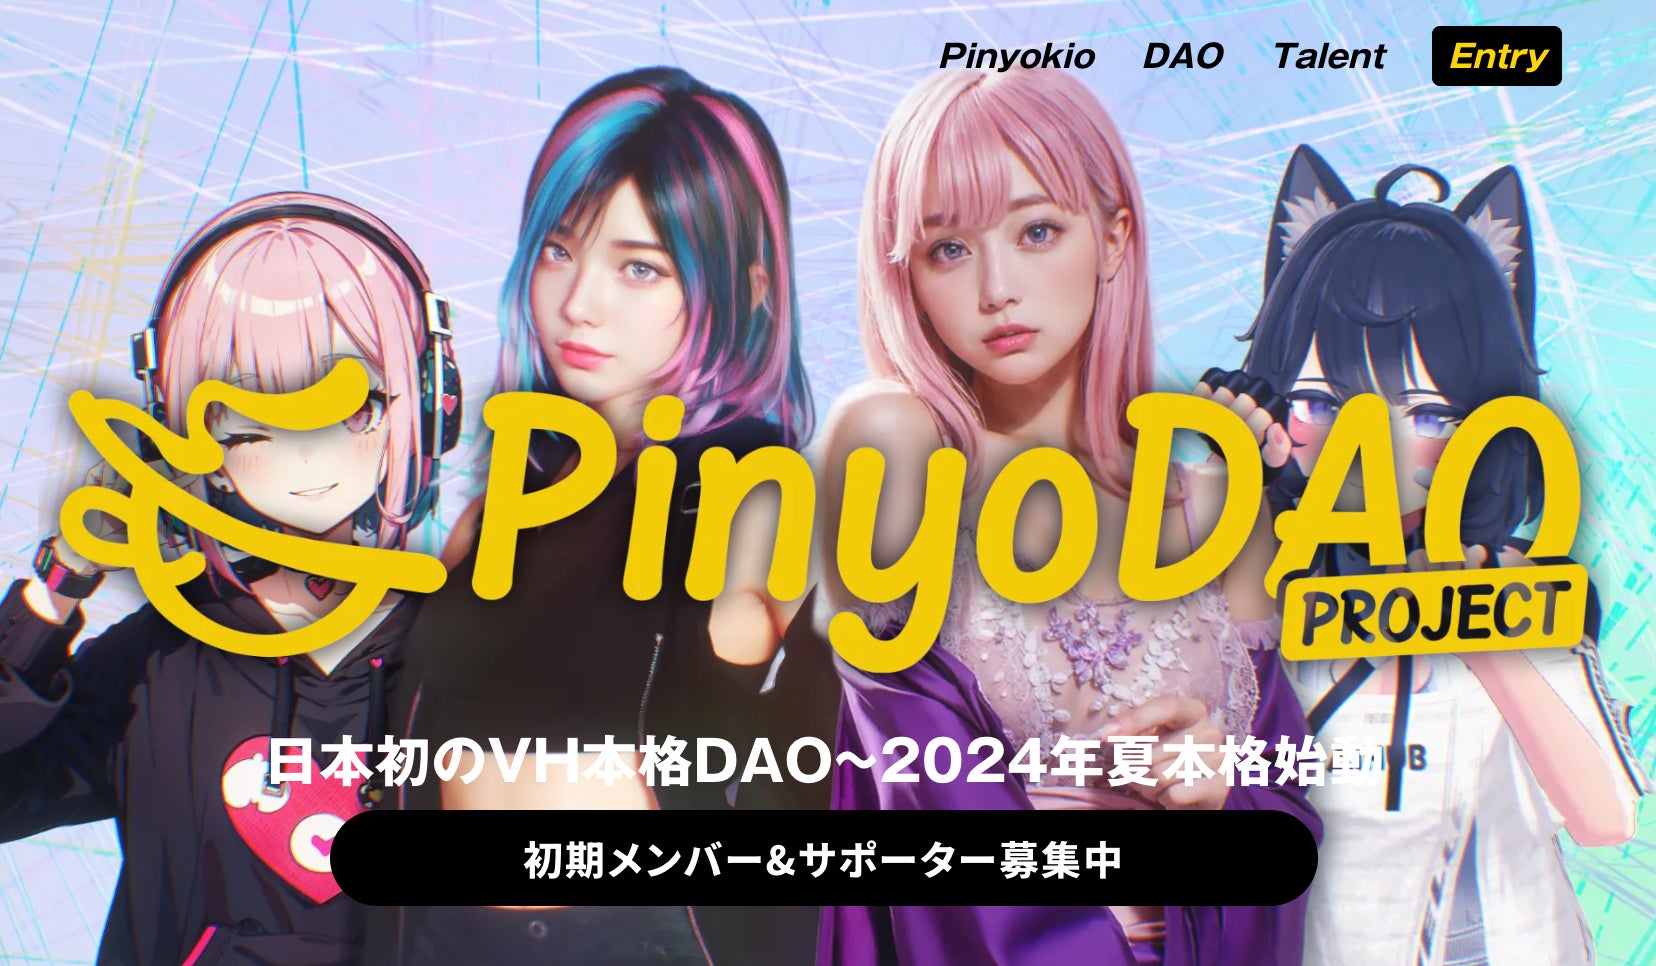 Pinyokioプロダクション、本日より"歌舞伎町UPGATE 2024"にブース出展- AIバーチャルヒューマンとの夢の空間...